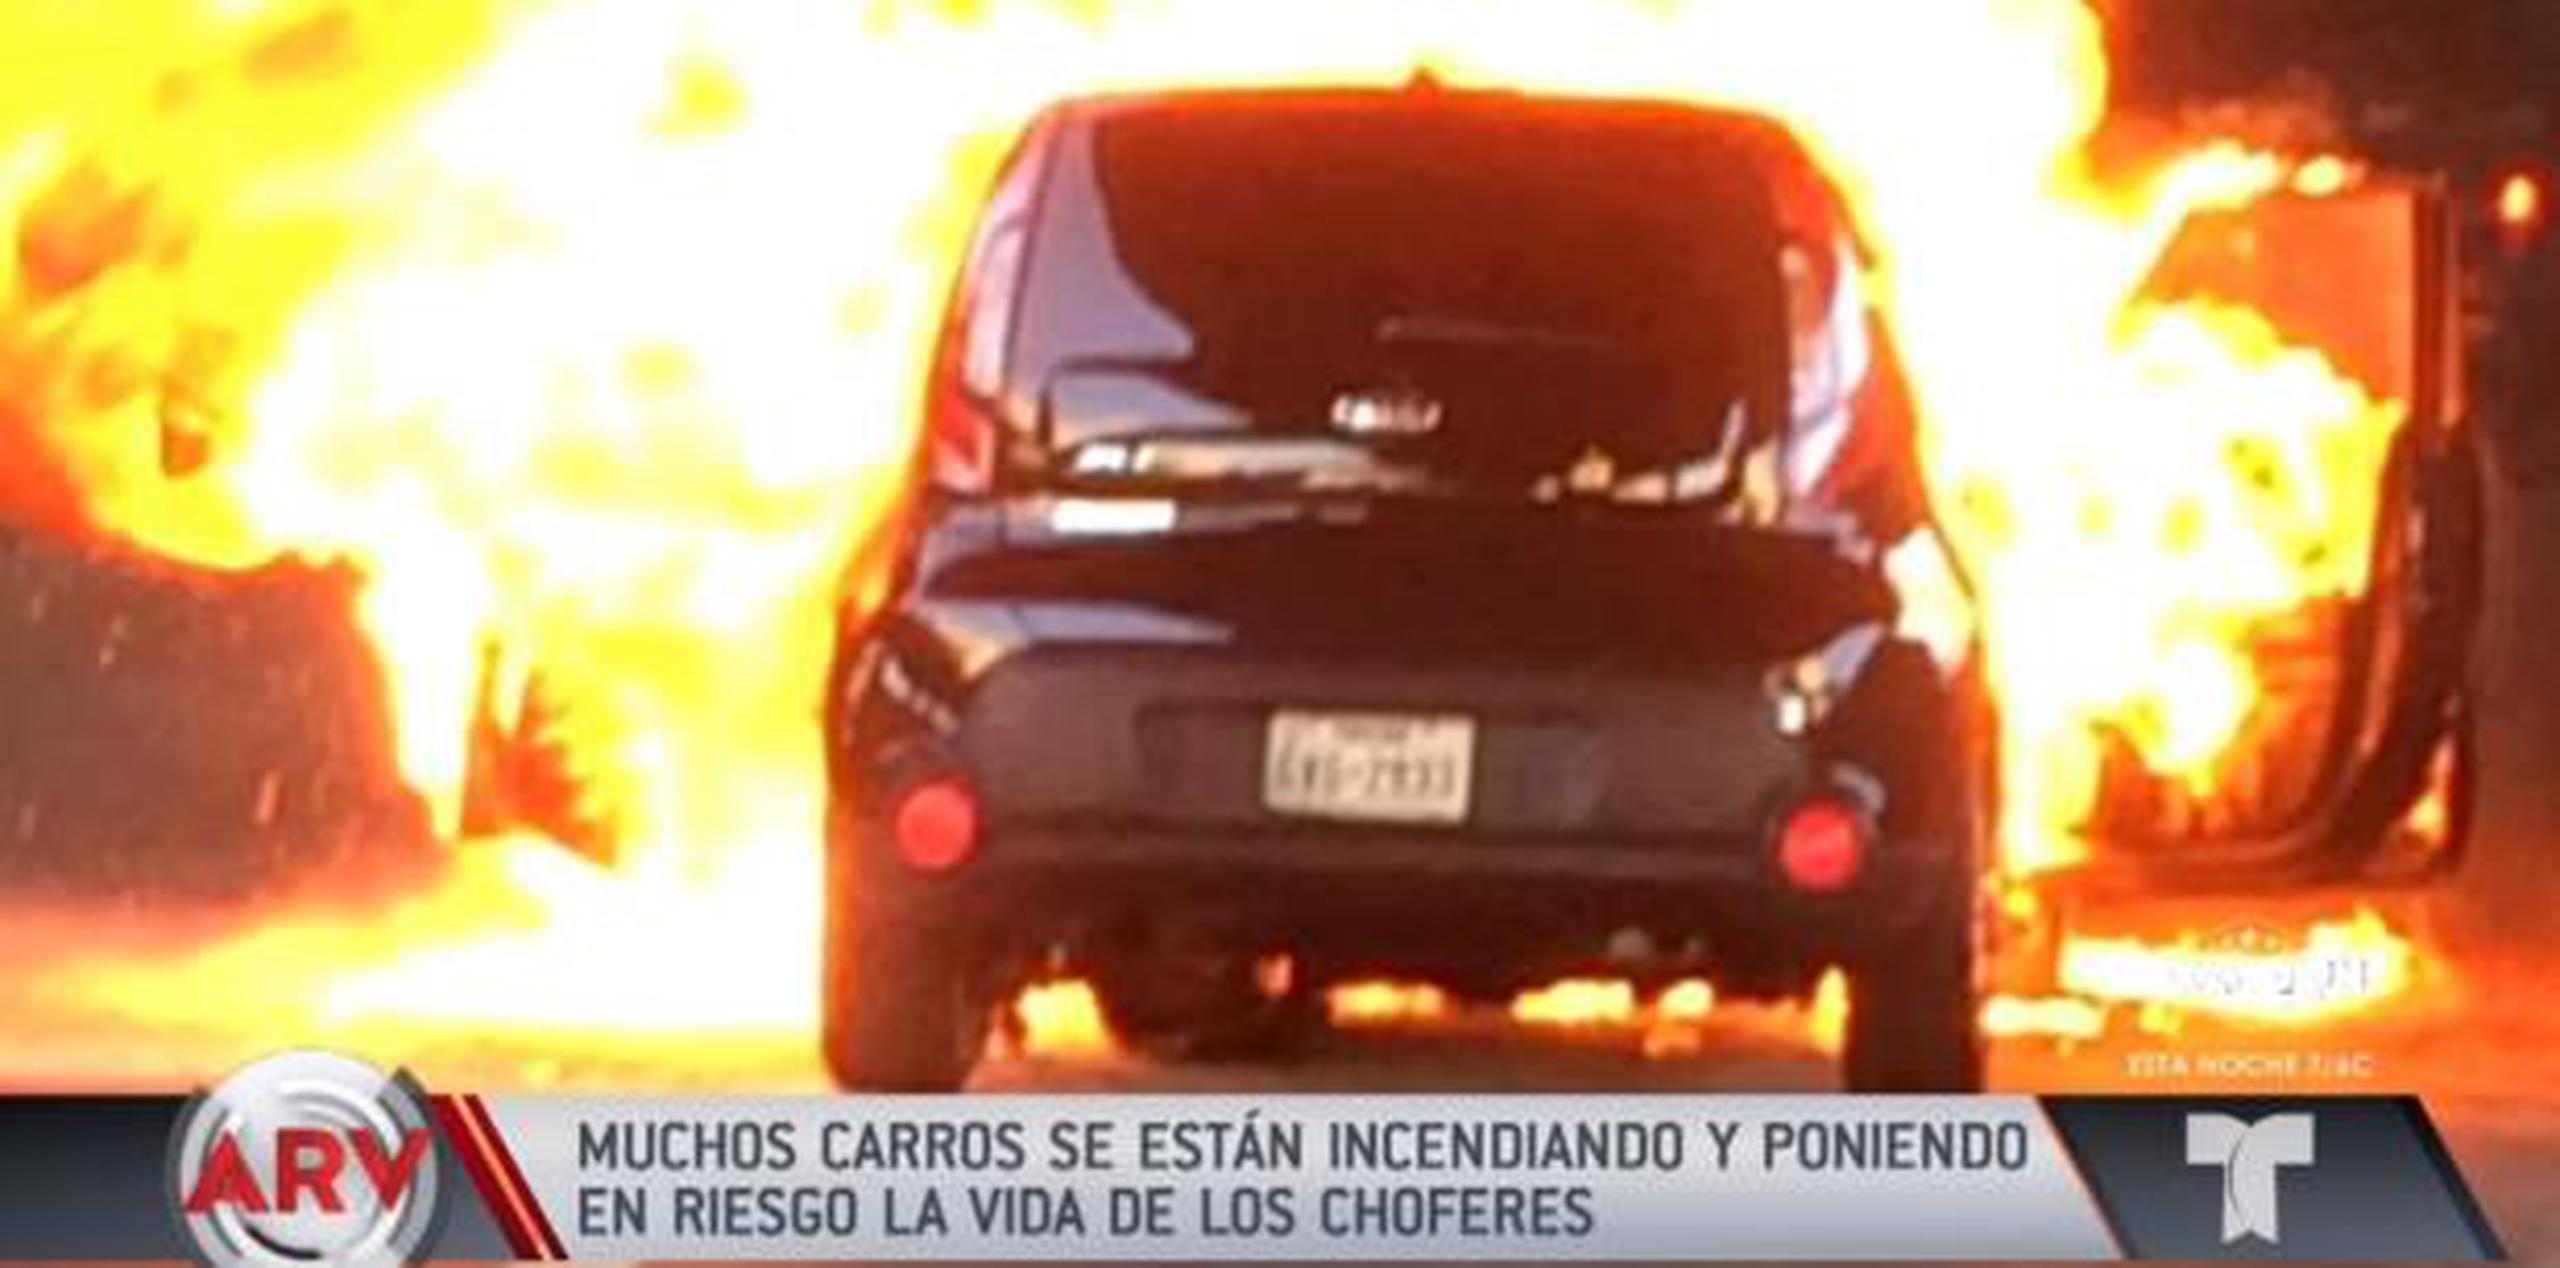 La agencia investigara la razón por la cual los carros Kia y Hyundai estallaron en llamas cuando no estaban involucrados en ningún accidente. (Captura)